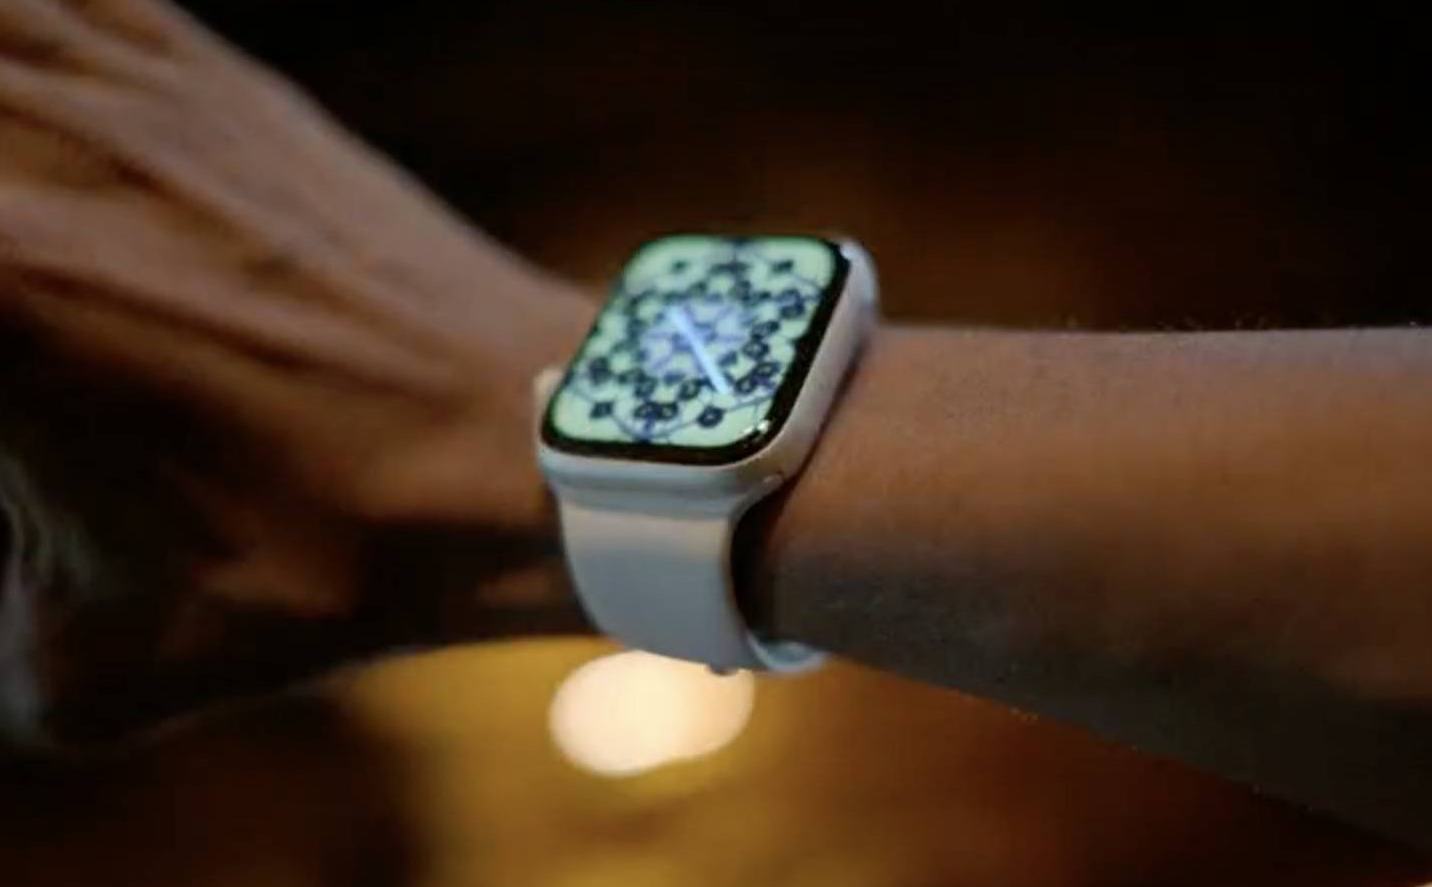 Apple Watch Series 4 Wearing